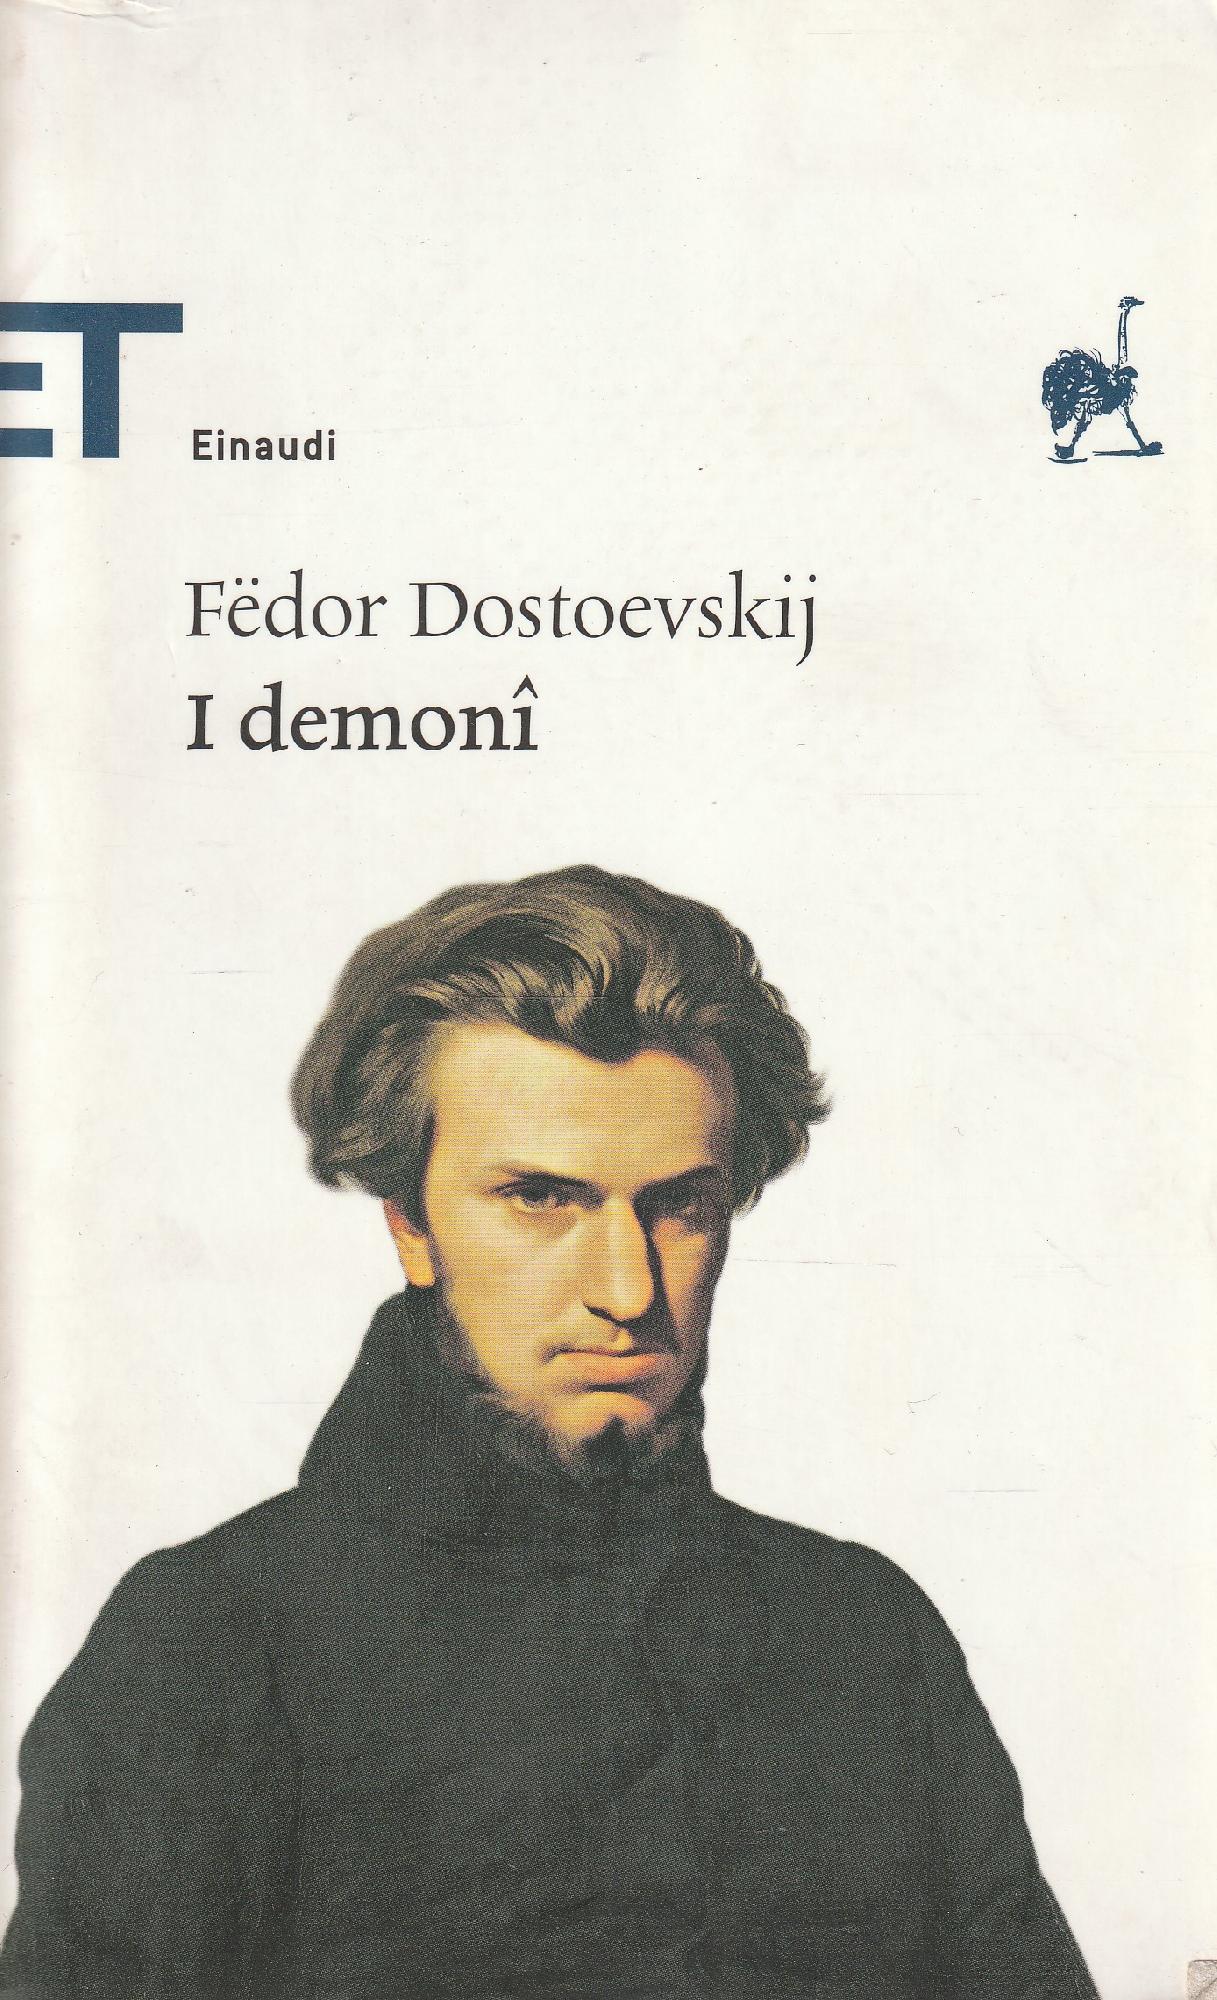 I demoni - Dostoevskij Fëdor